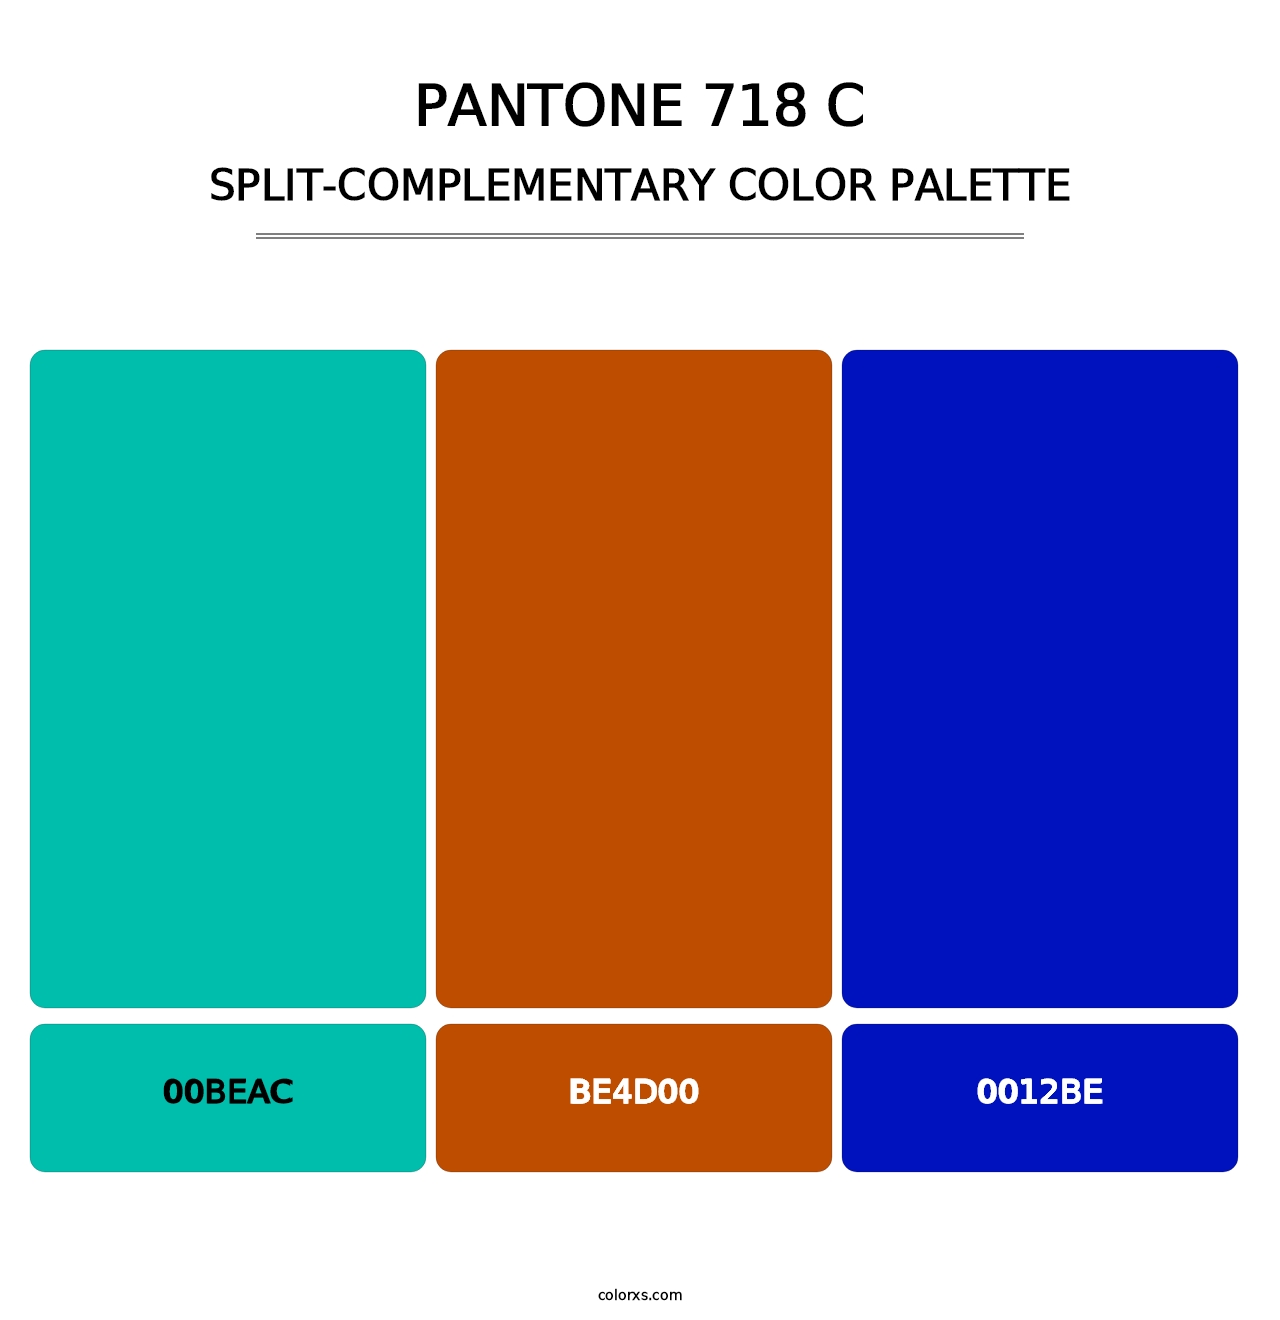 PANTONE 718 C - Split-Complementary Color Palette